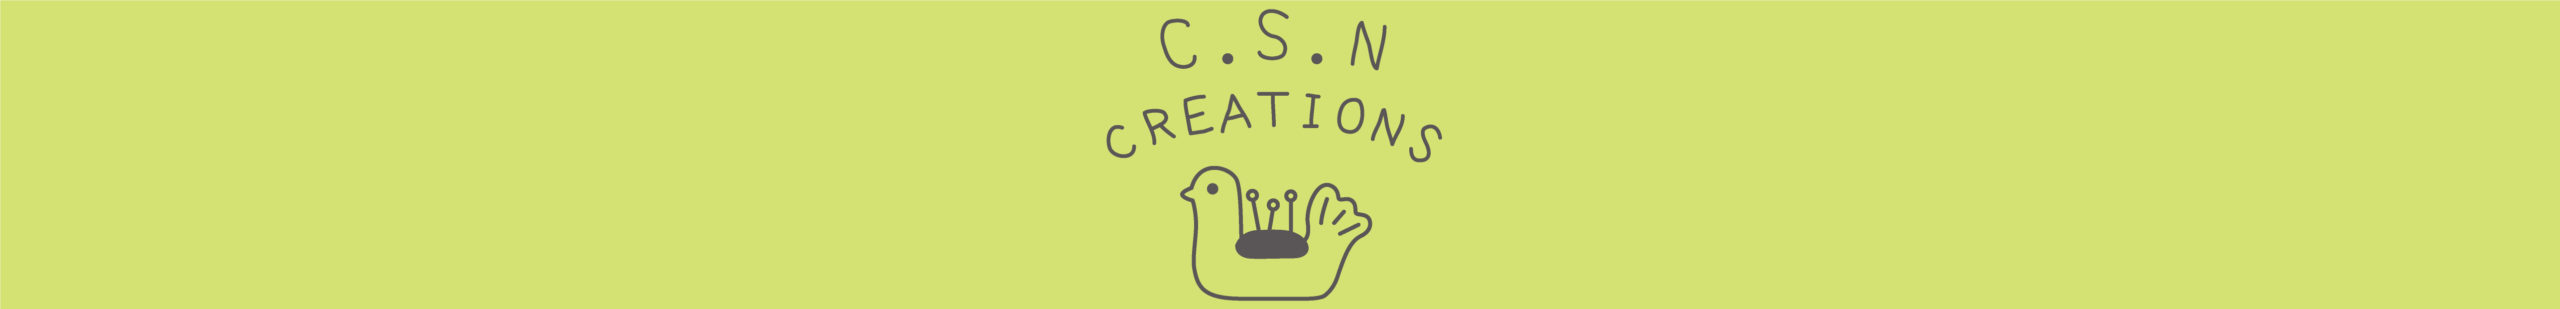 C.S.N CREATIONS